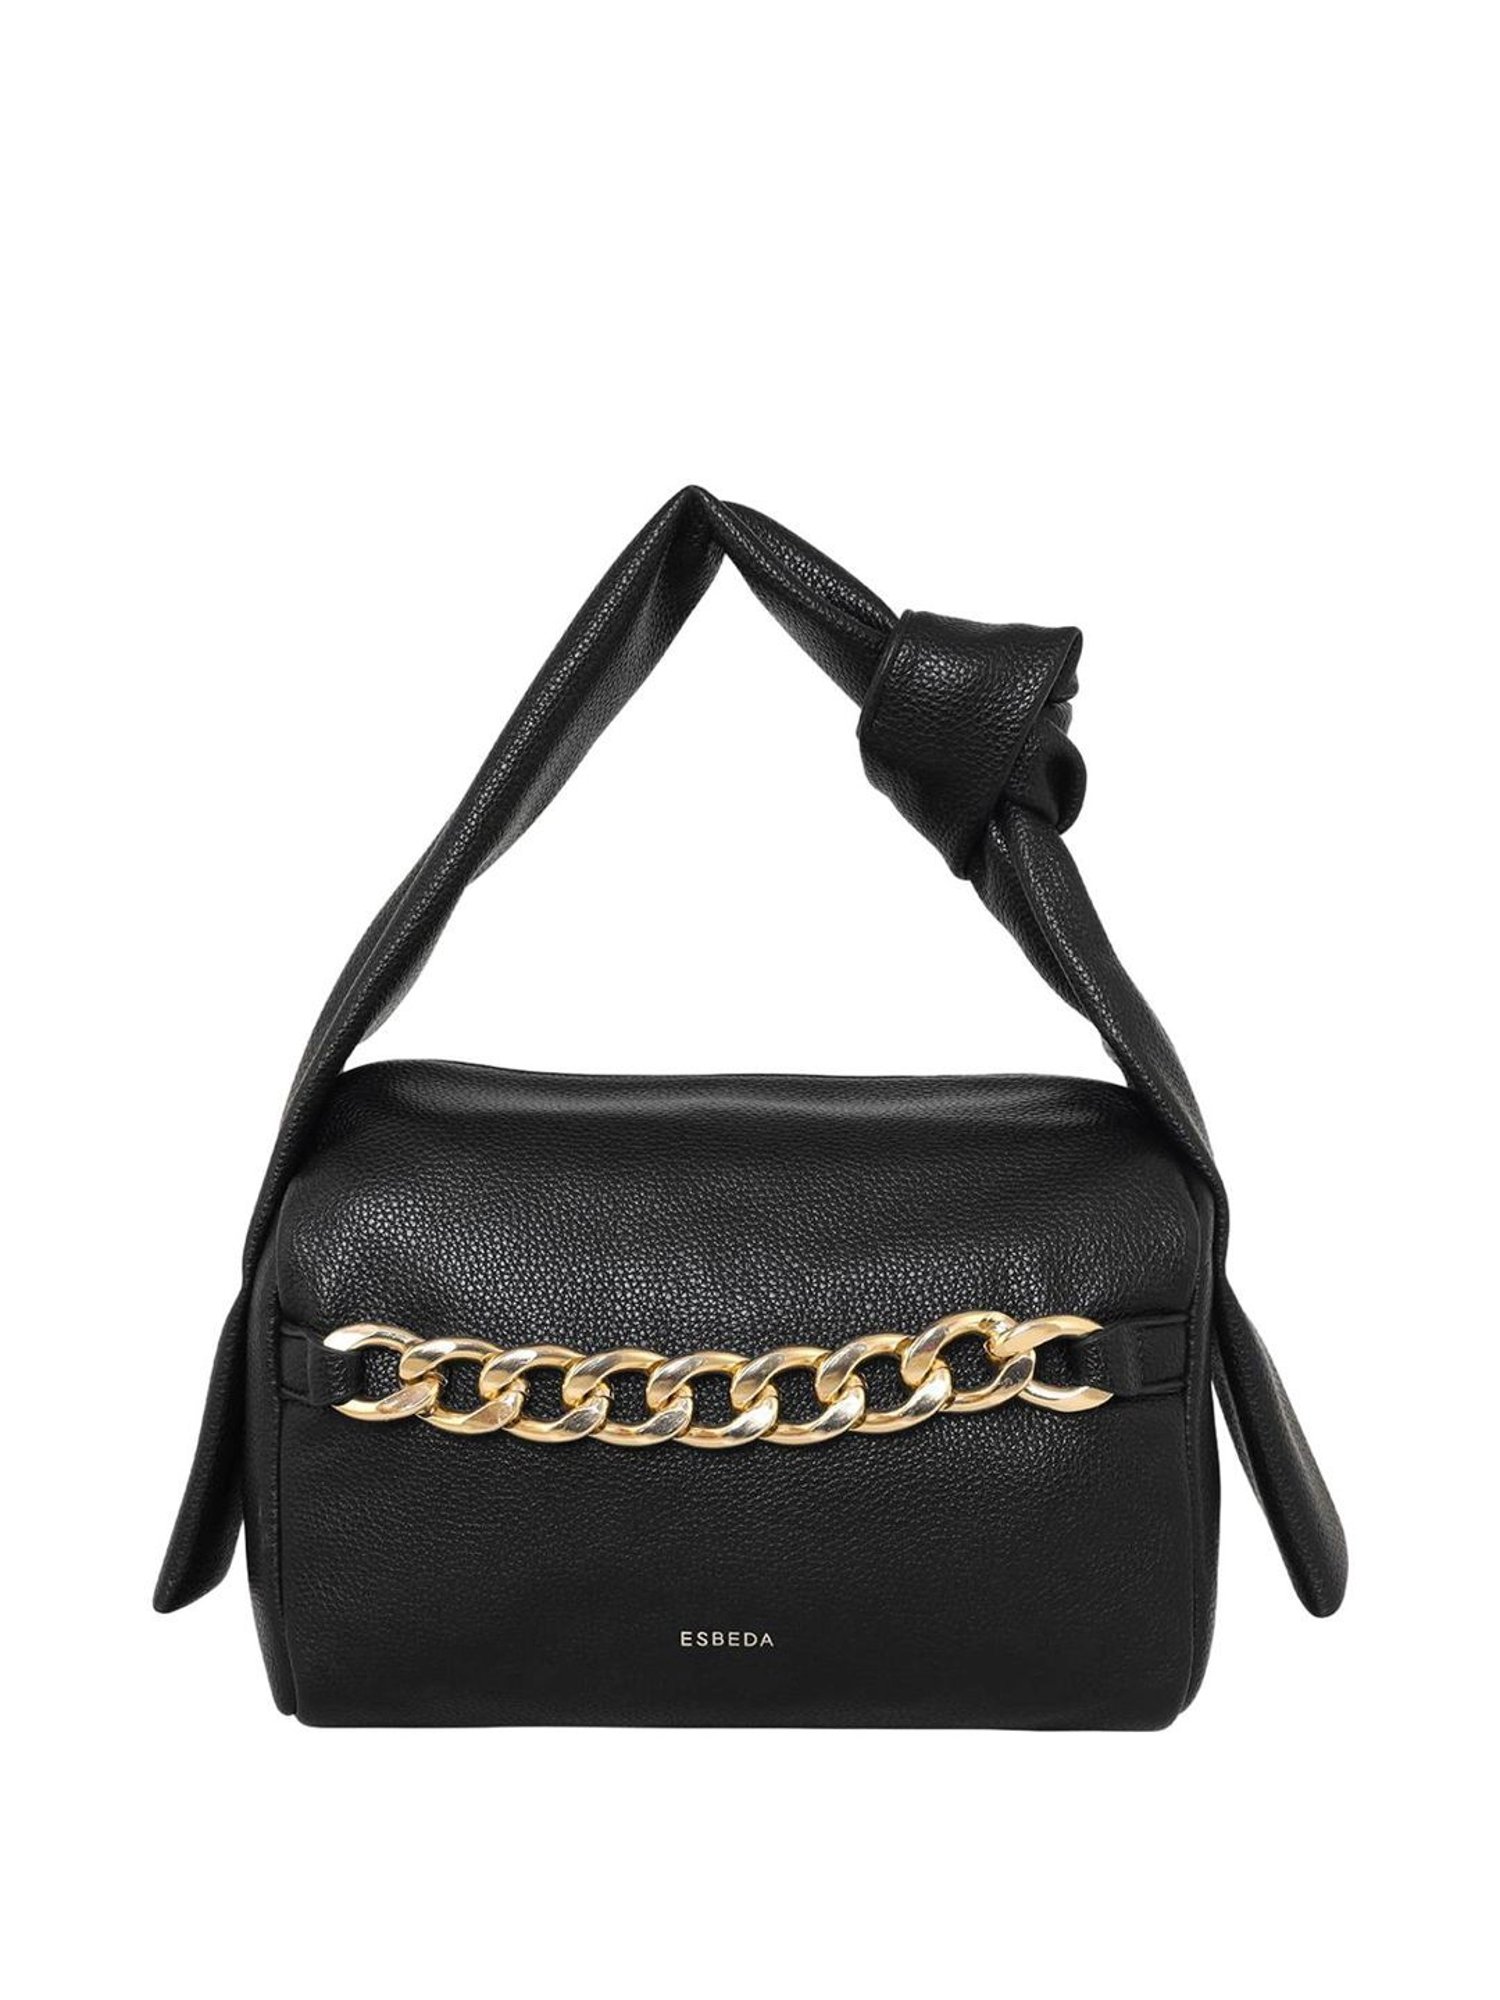 ESBEDA Dark Green Color Solid Pattern Top Handle handbag For Women